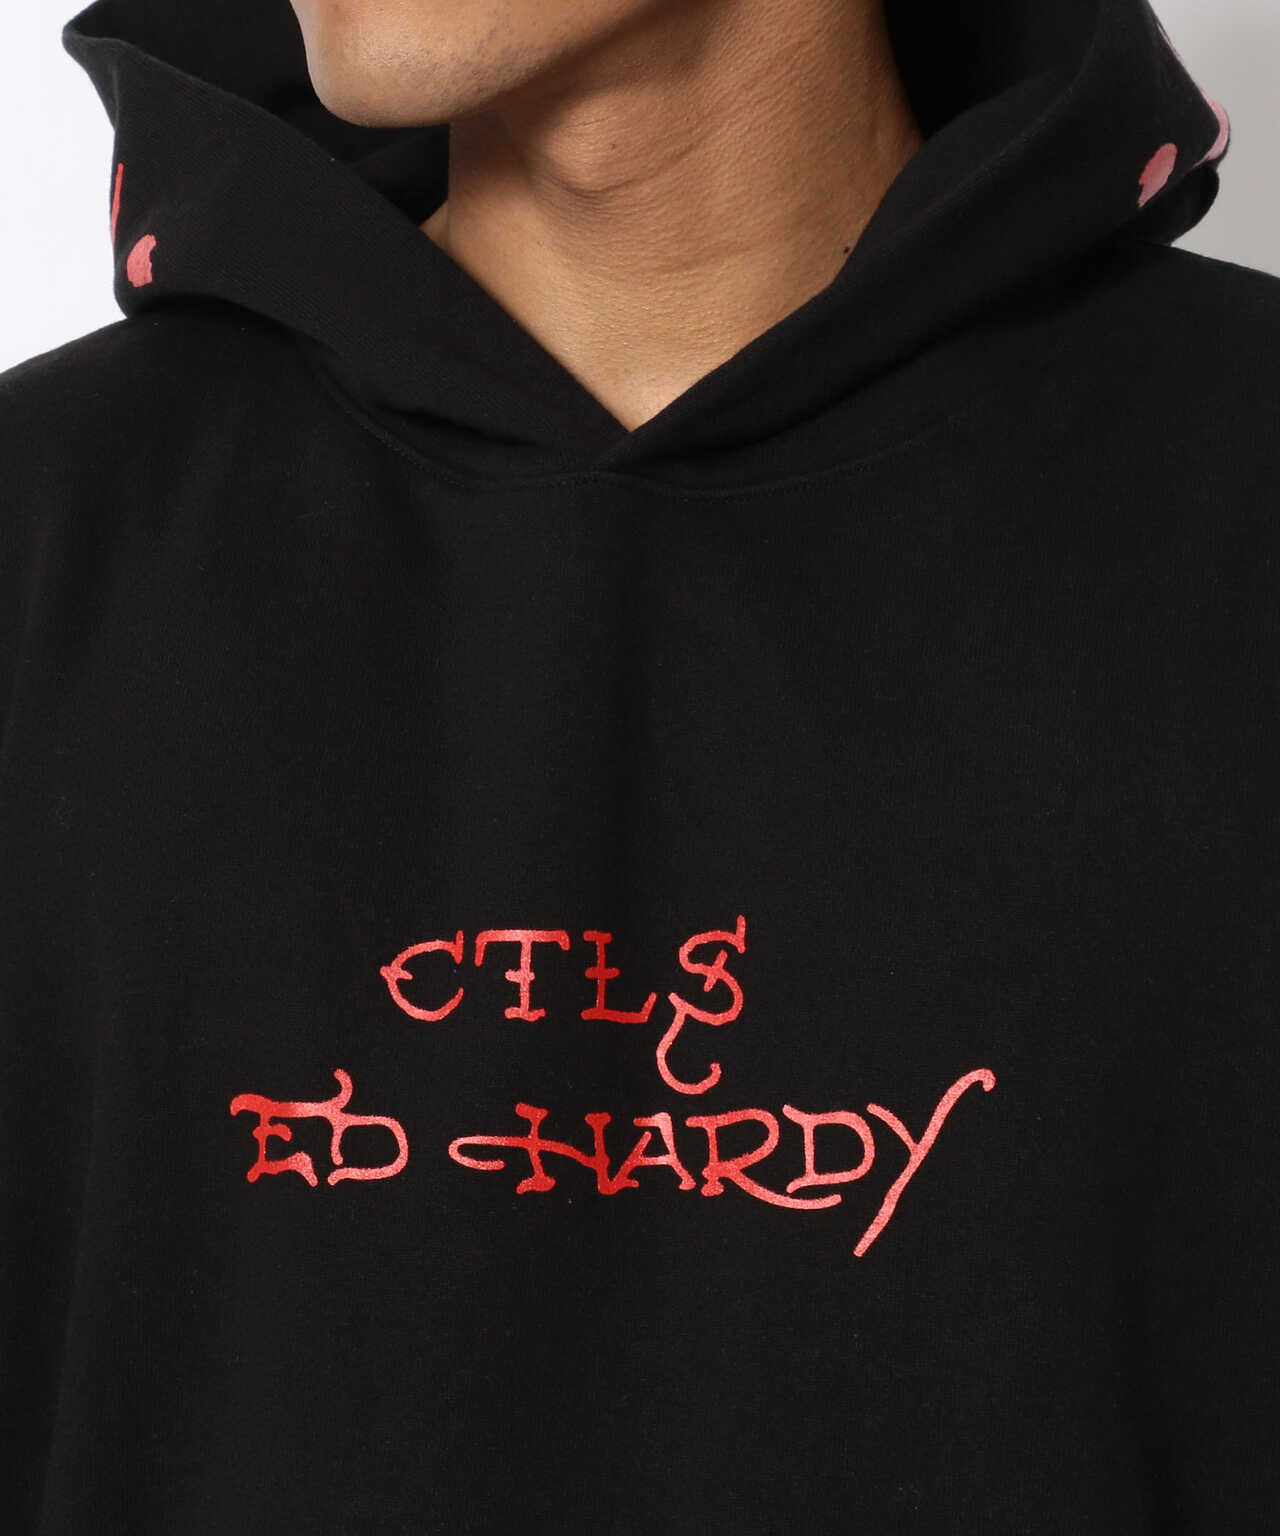 CTLS×Ed Hardy/シーティーエルエス×エド ハーディー/コラボ PK81 